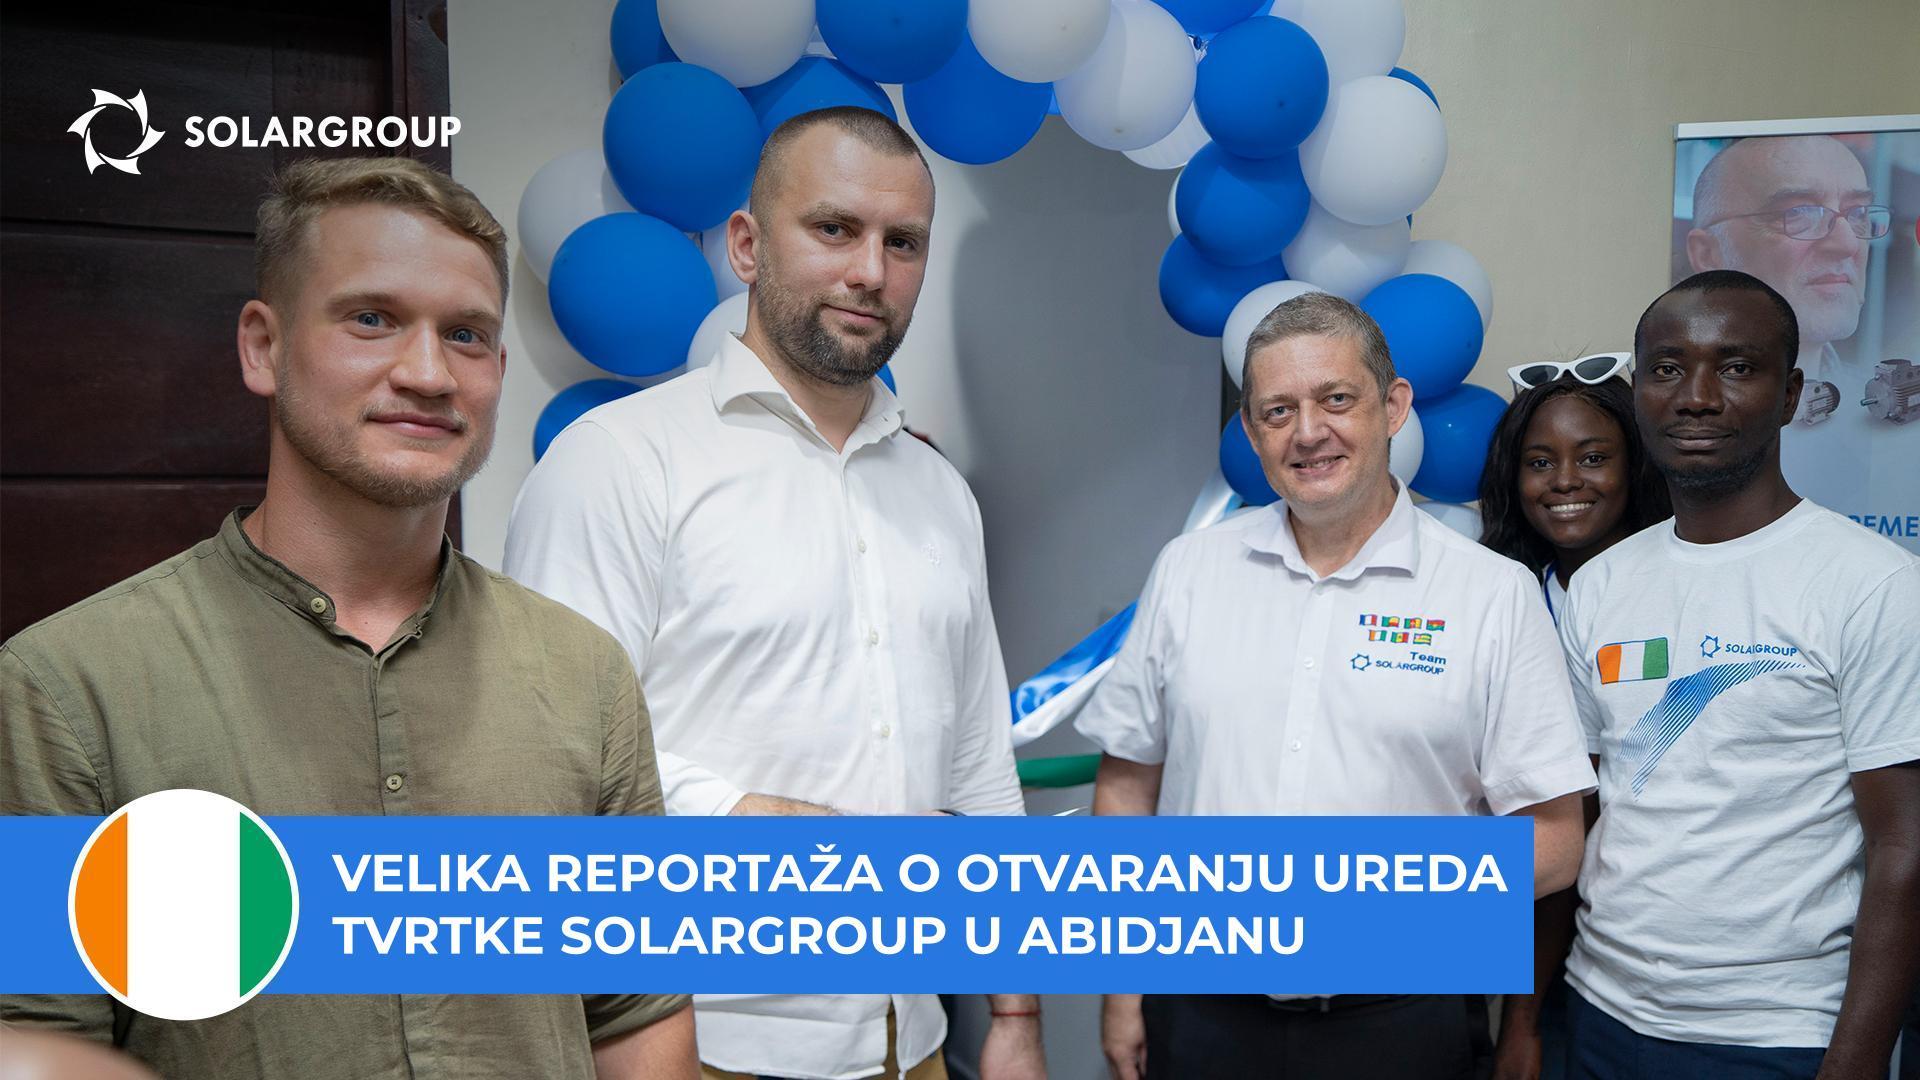 "Naš san je postao stvarnost" - partneri tvrtke SOLARGROUP o otvaranju ureda u Obali Bjelokosti